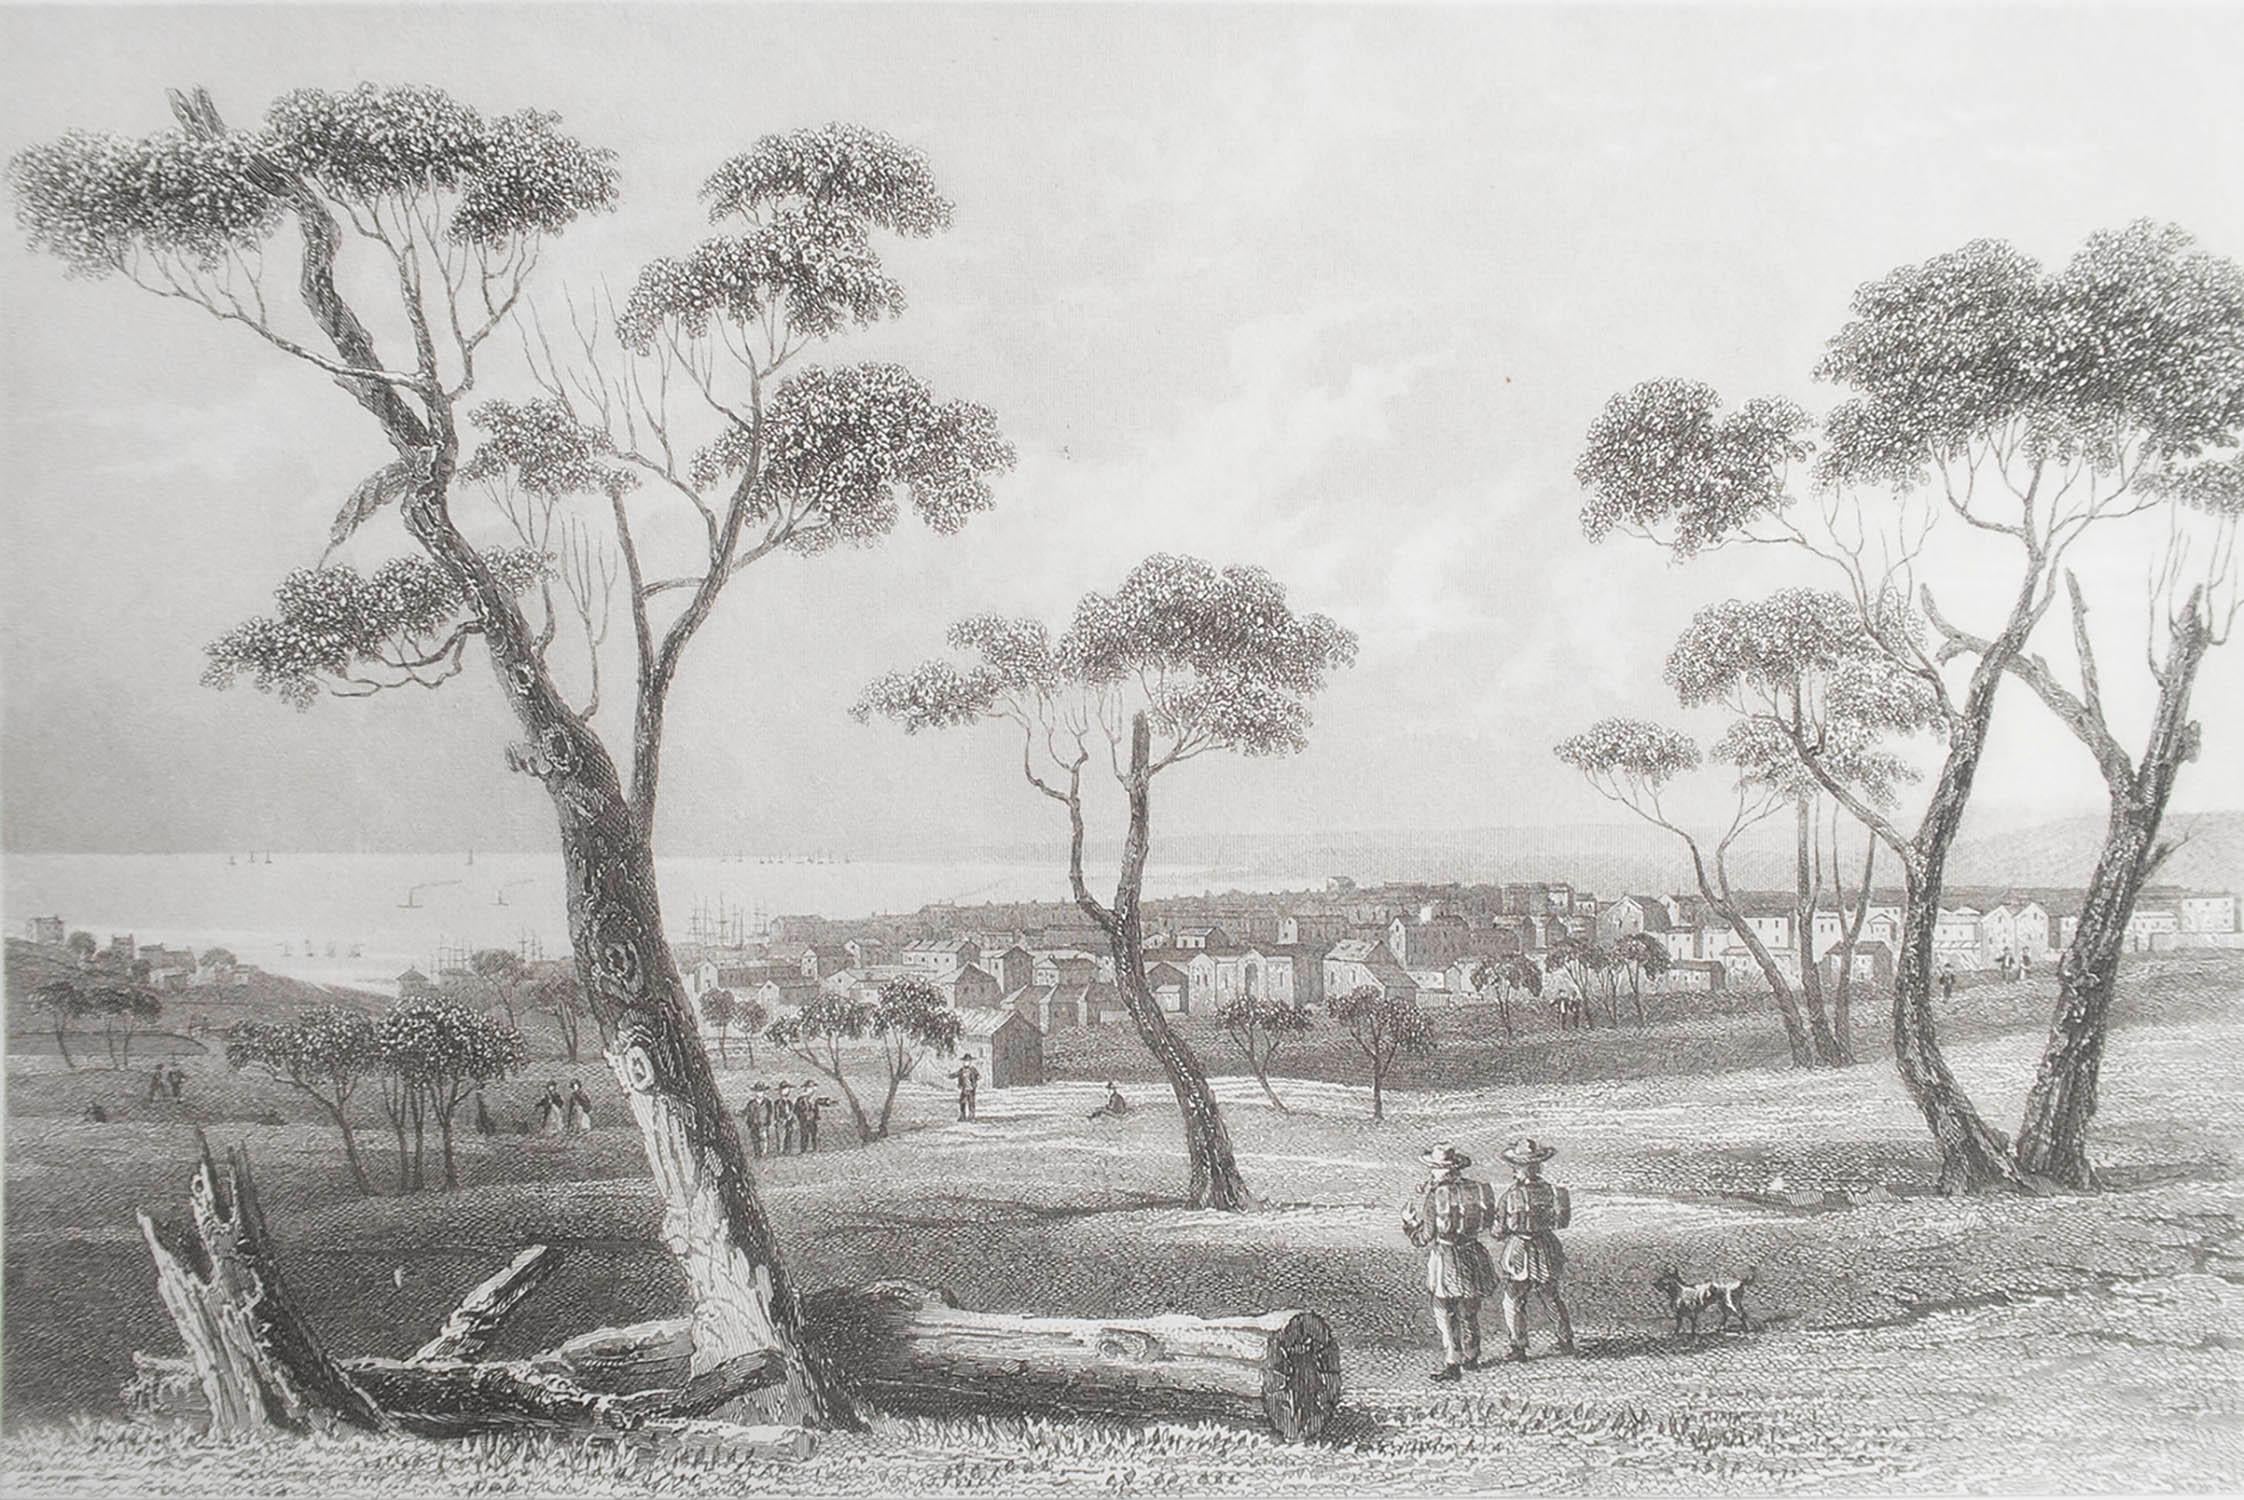 Toller Druck von Geelong

Feiner Stahlstich nach H. Winkles

Veröffentlicht, um 1850

Ungerahmt.

Knick in der linken oberen Ecke
 